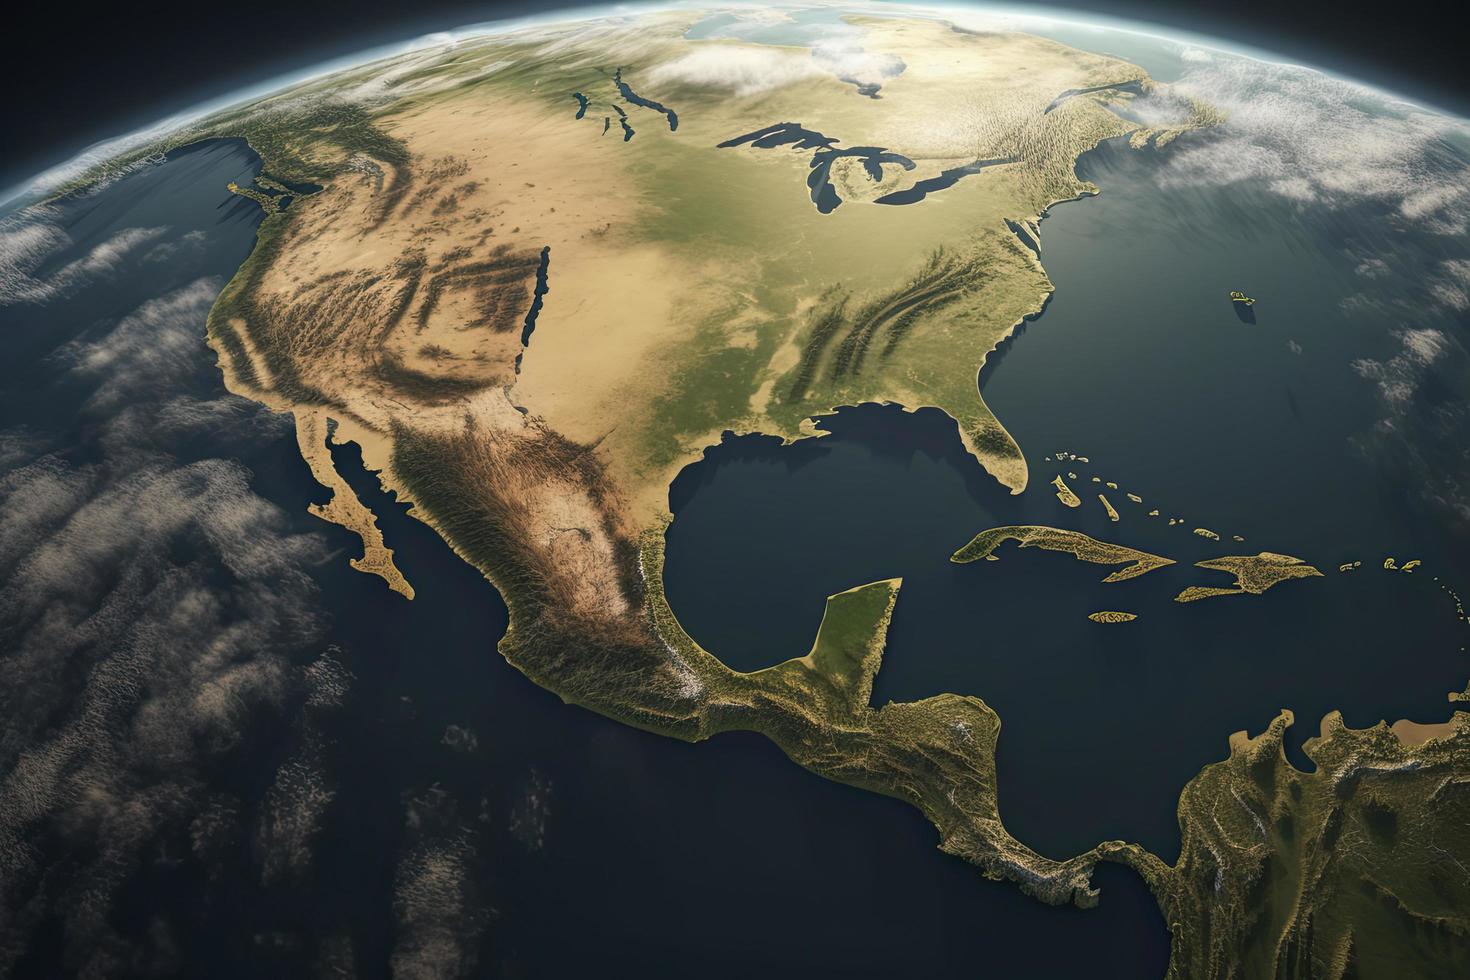 superfície do a planeta terra visto a partir de uma satélite, focado em sul América, andes Cordilheira e Amazonas floresta tropical foto